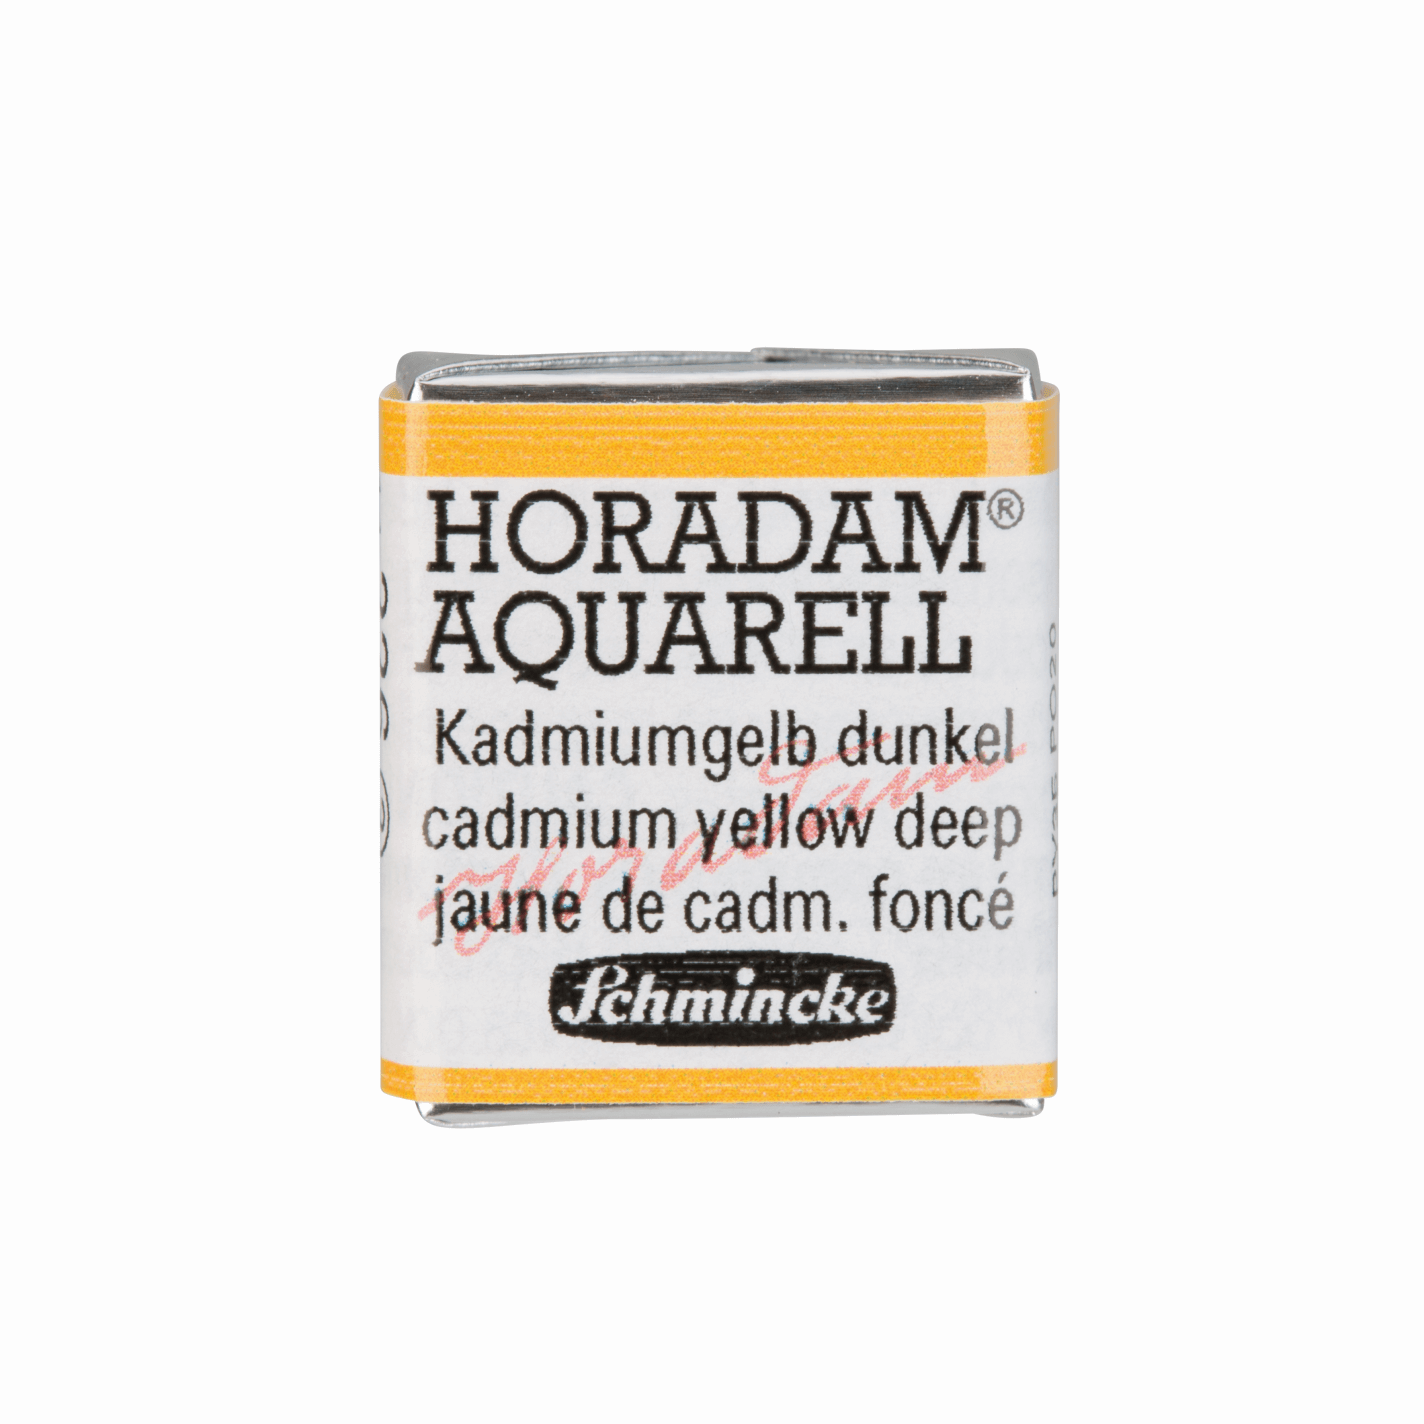 Schmincke Horadam Aquarell pans 1/2 pan Cadmium Yellow Deep